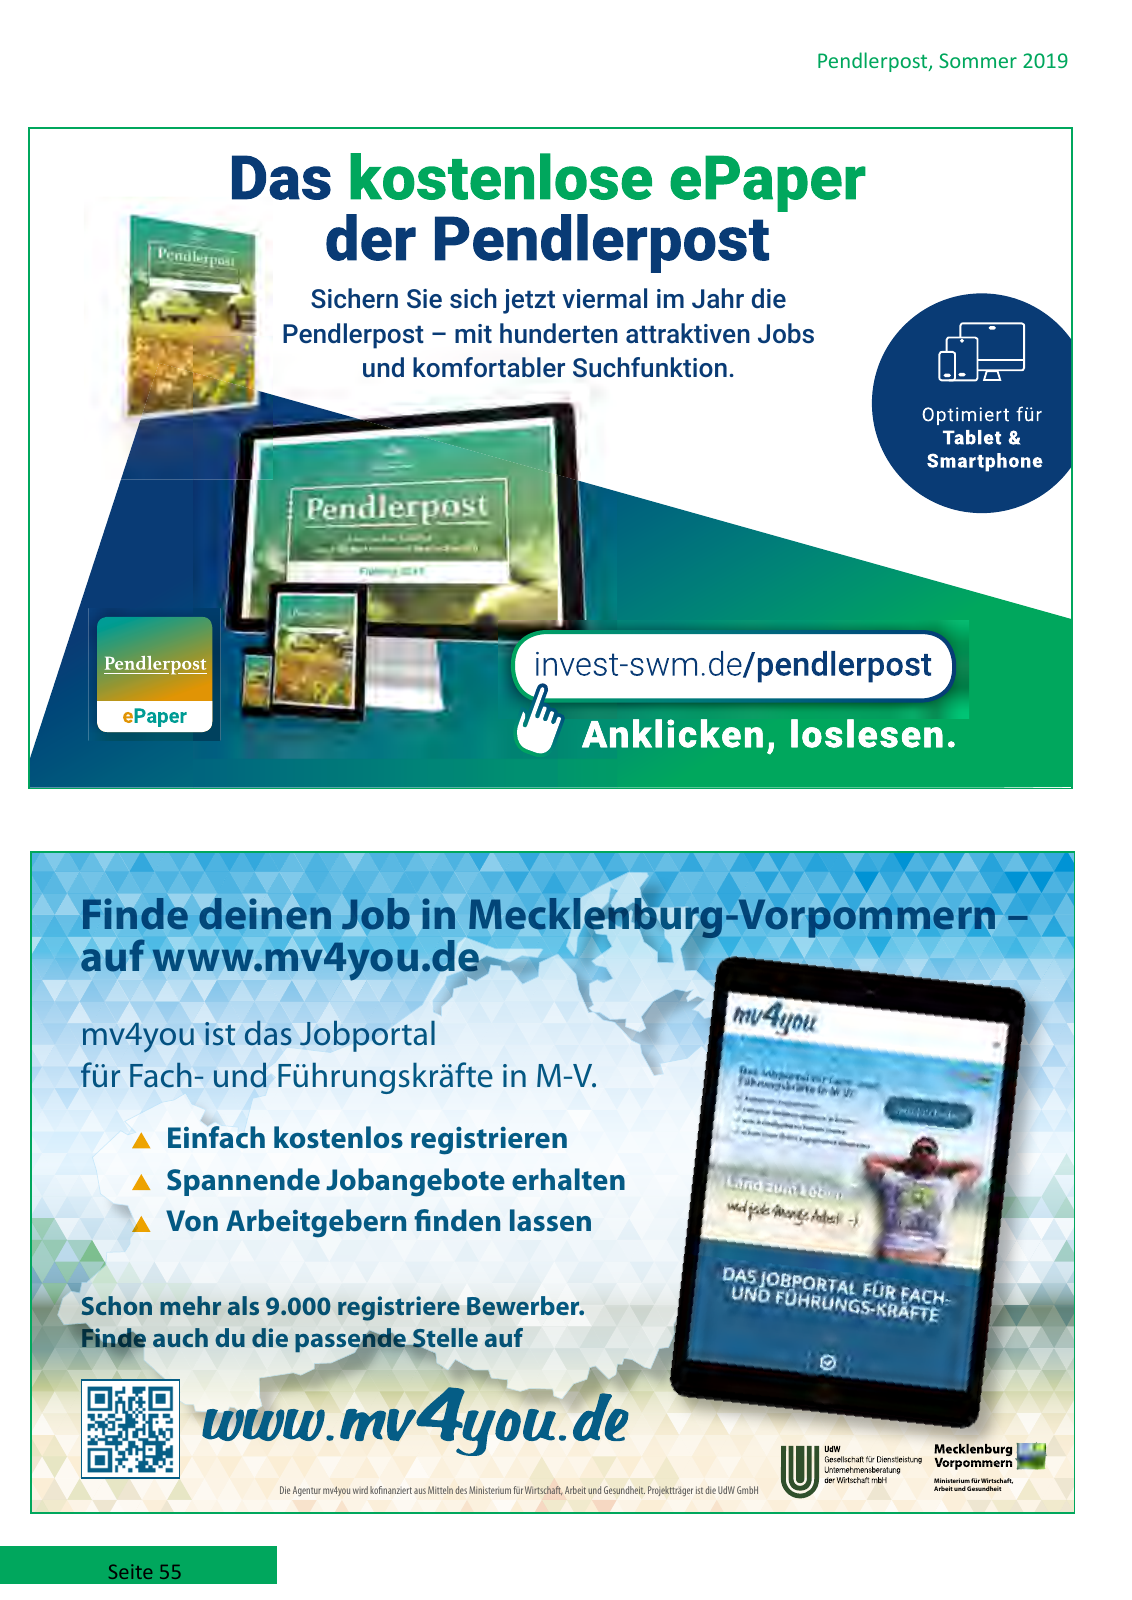 Vorschau Pendlerpost Sommer 2019_web Seite 55